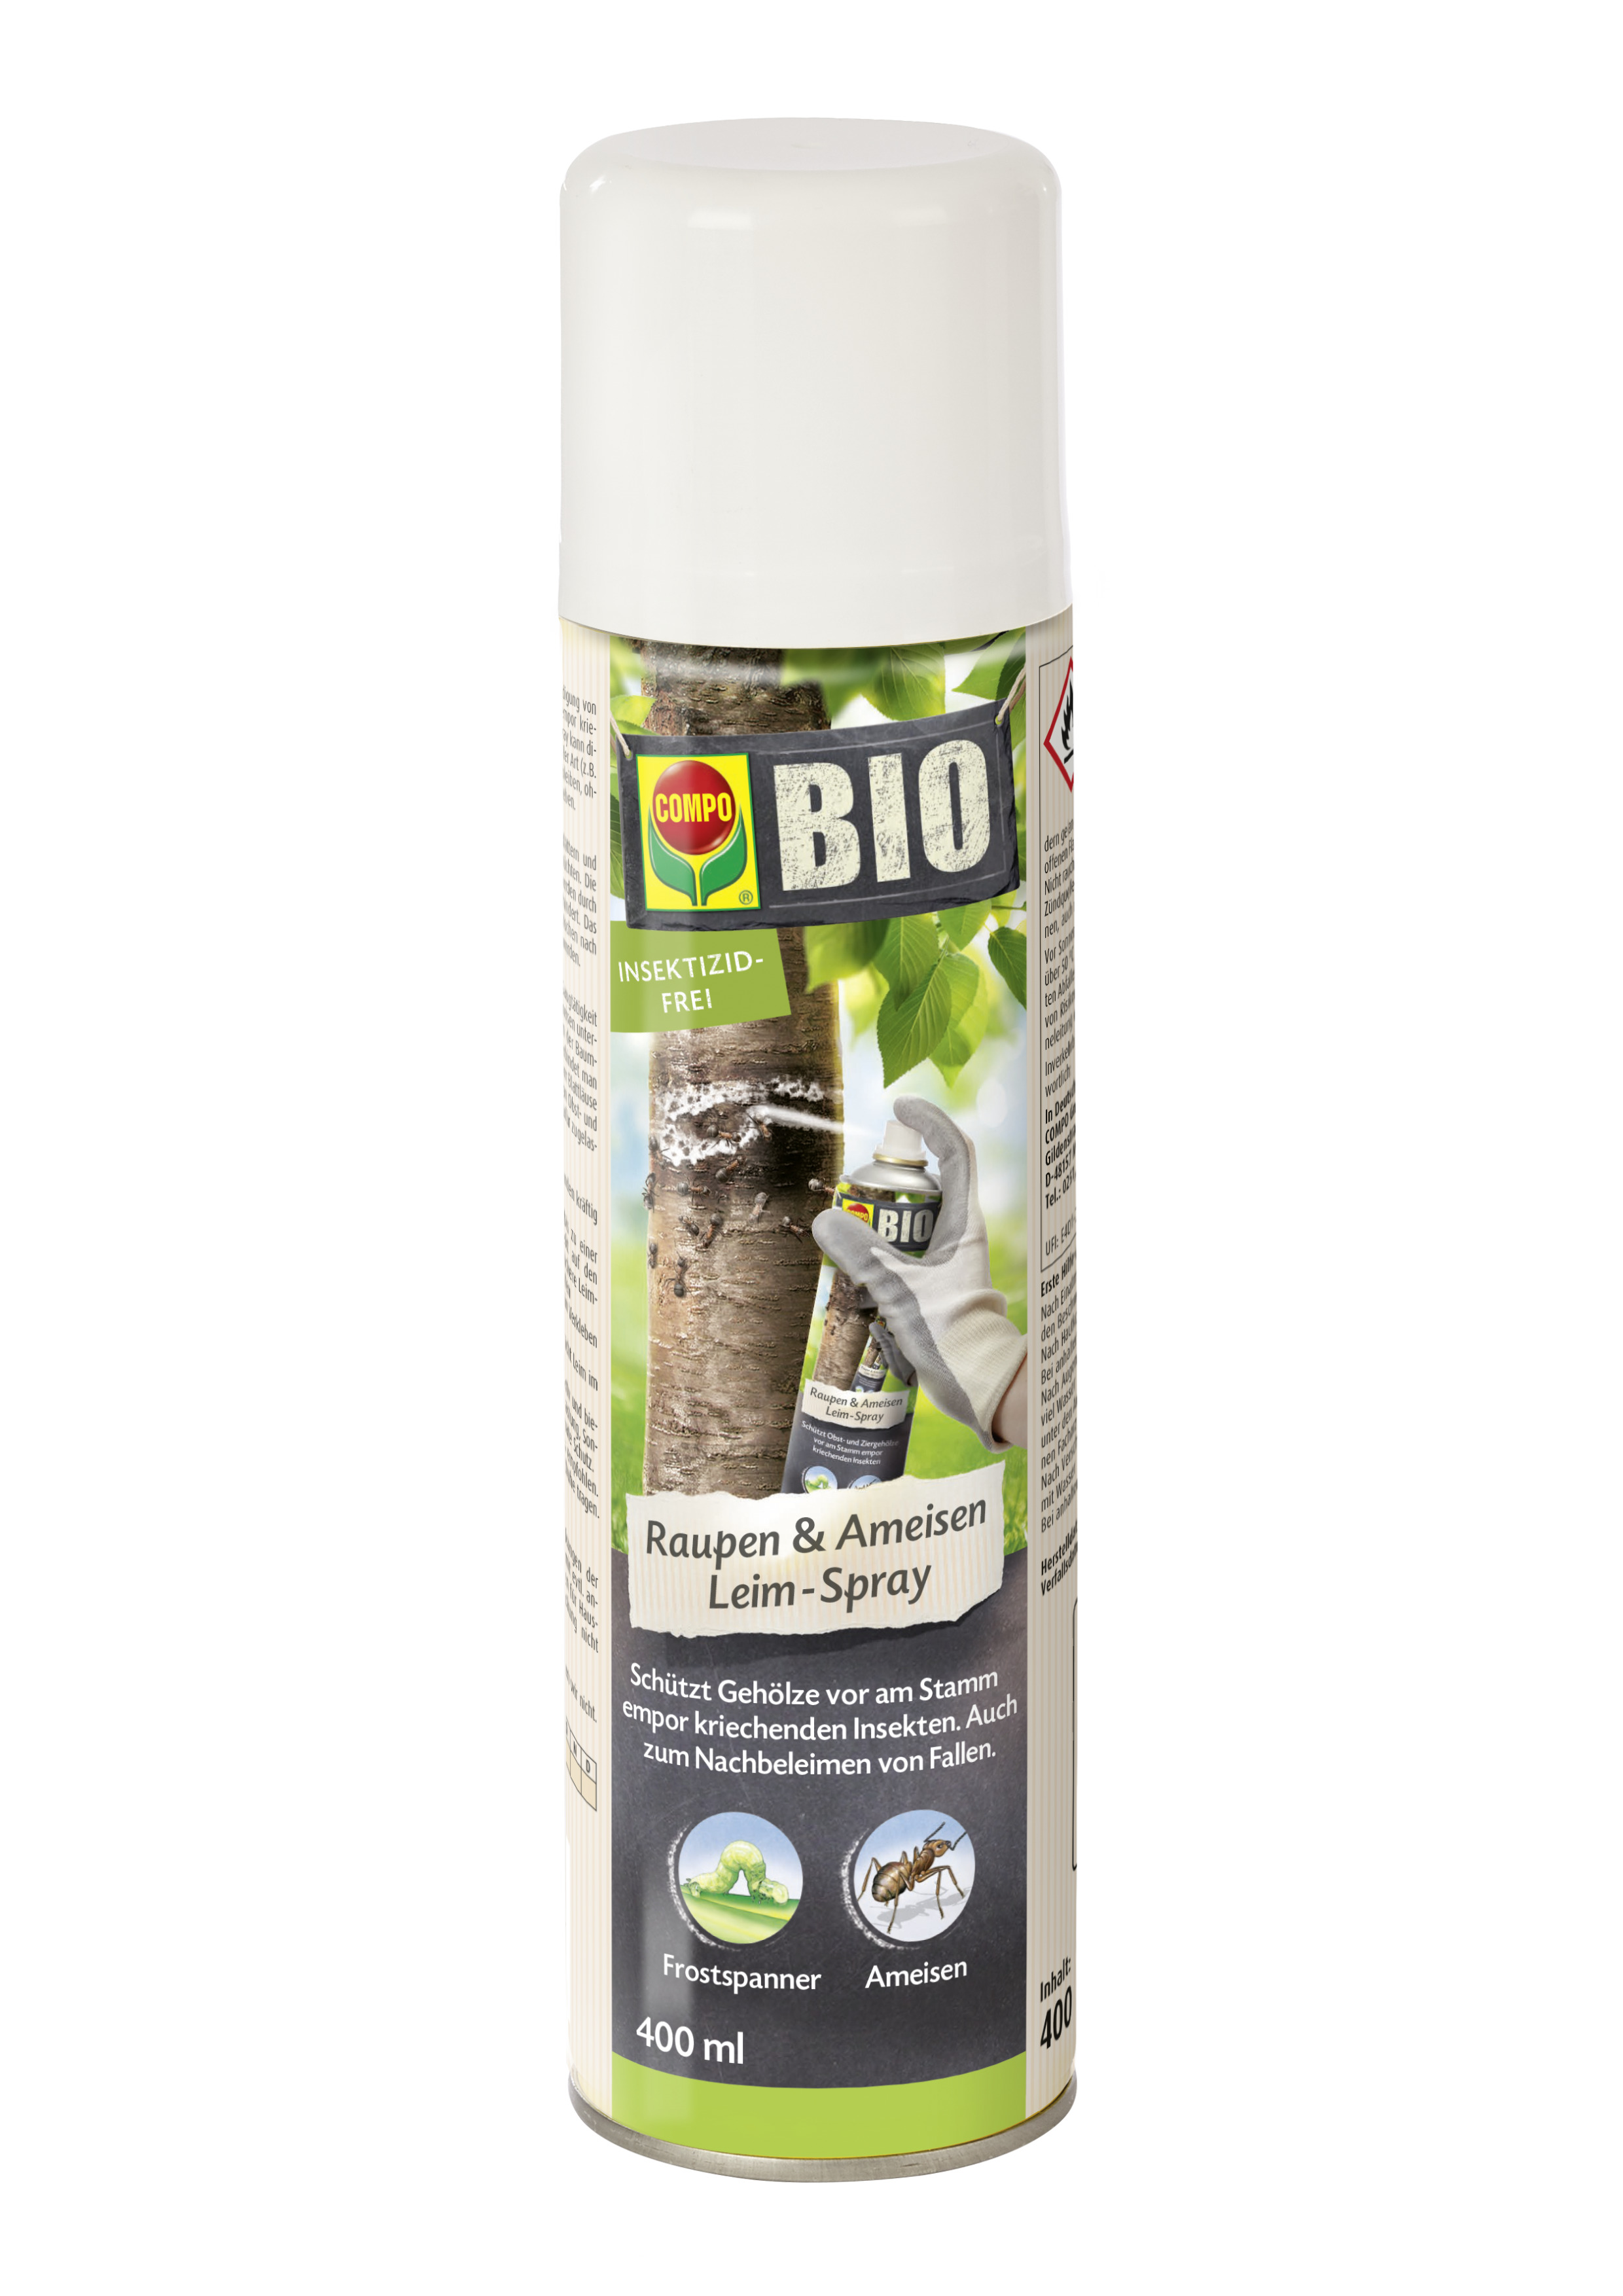 Compo BIO Raupen & Ameisen Leim-Spray, 400 ml